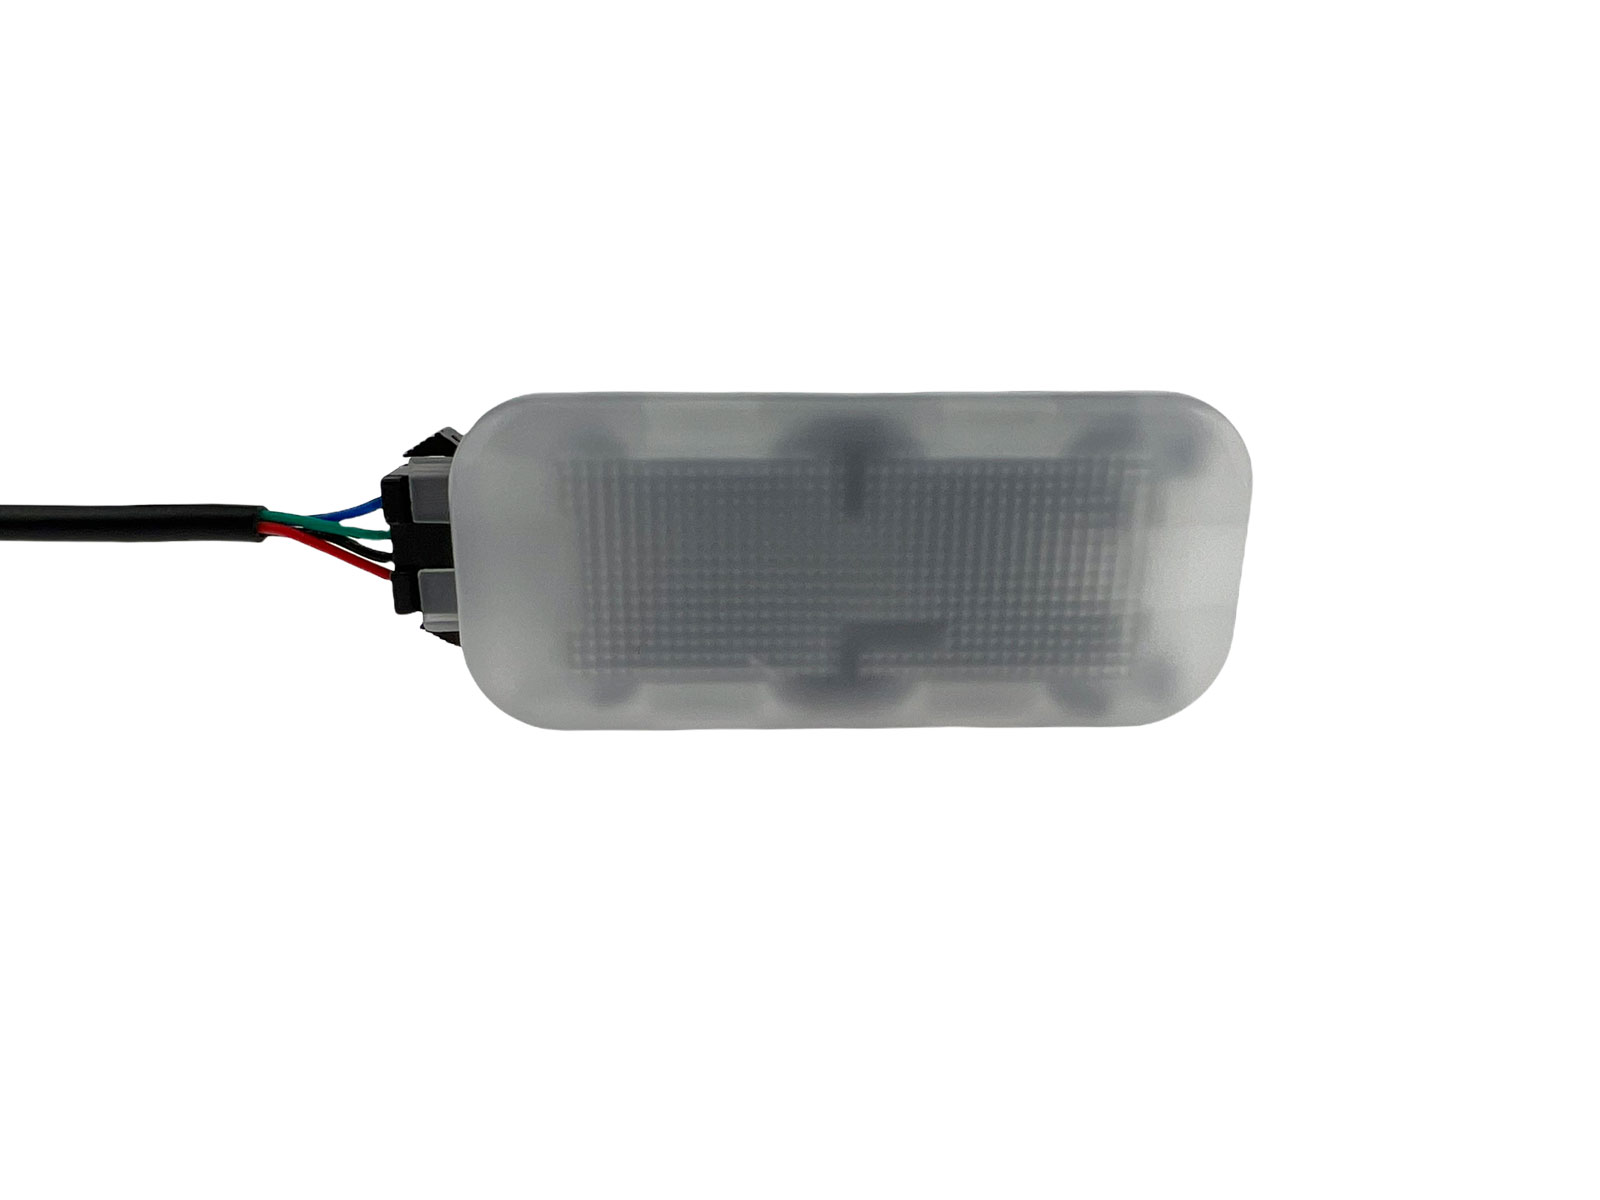 6x5630 SMD LED Modulplatine Fussraumbeleuchtung für Audi, VW